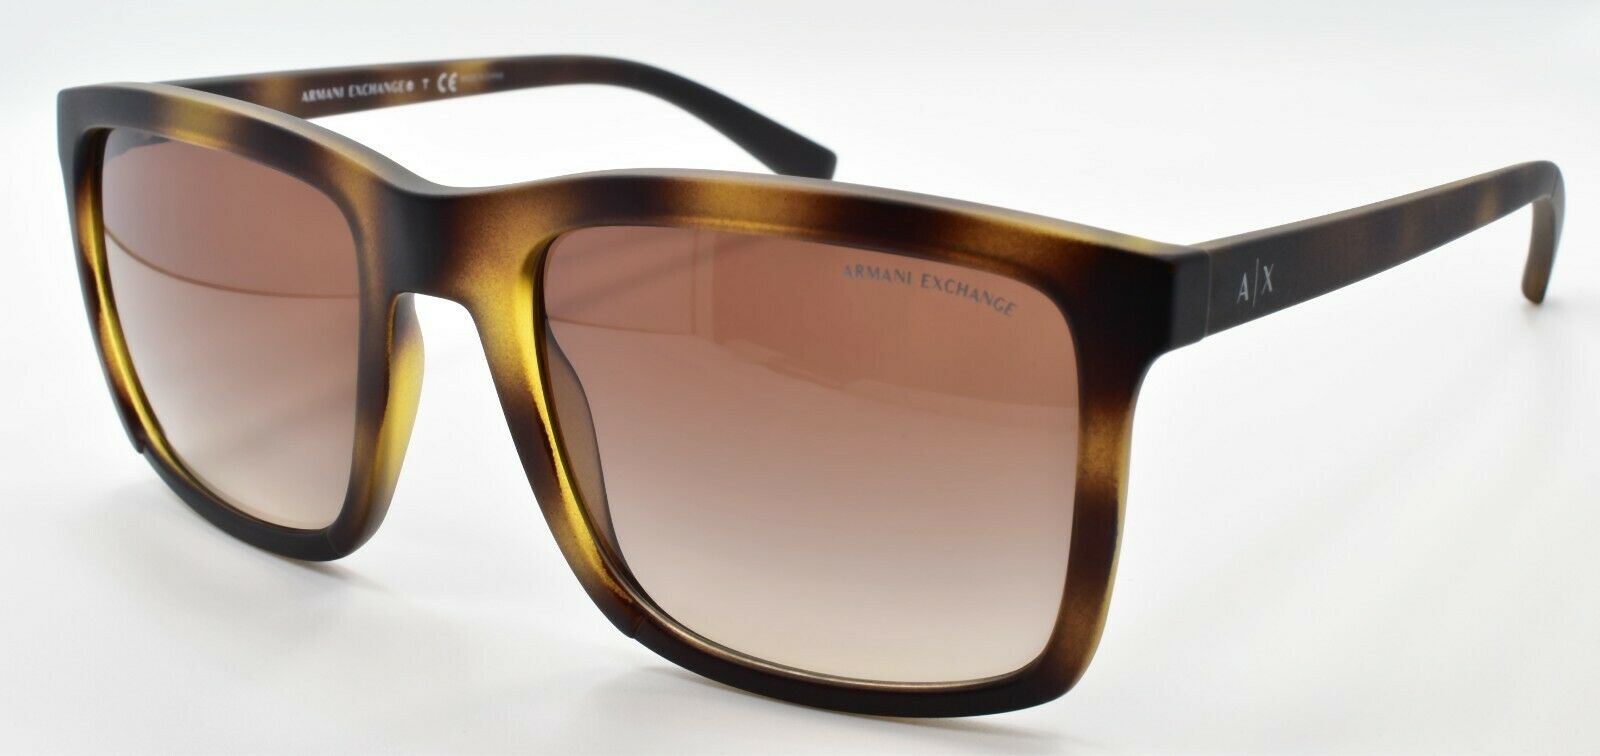 1-Armani Exchange AX4067S 8231/13 Men's Sunglasses 55-20-140 Matte Havana / Brown-8053672749878-IKSpecs